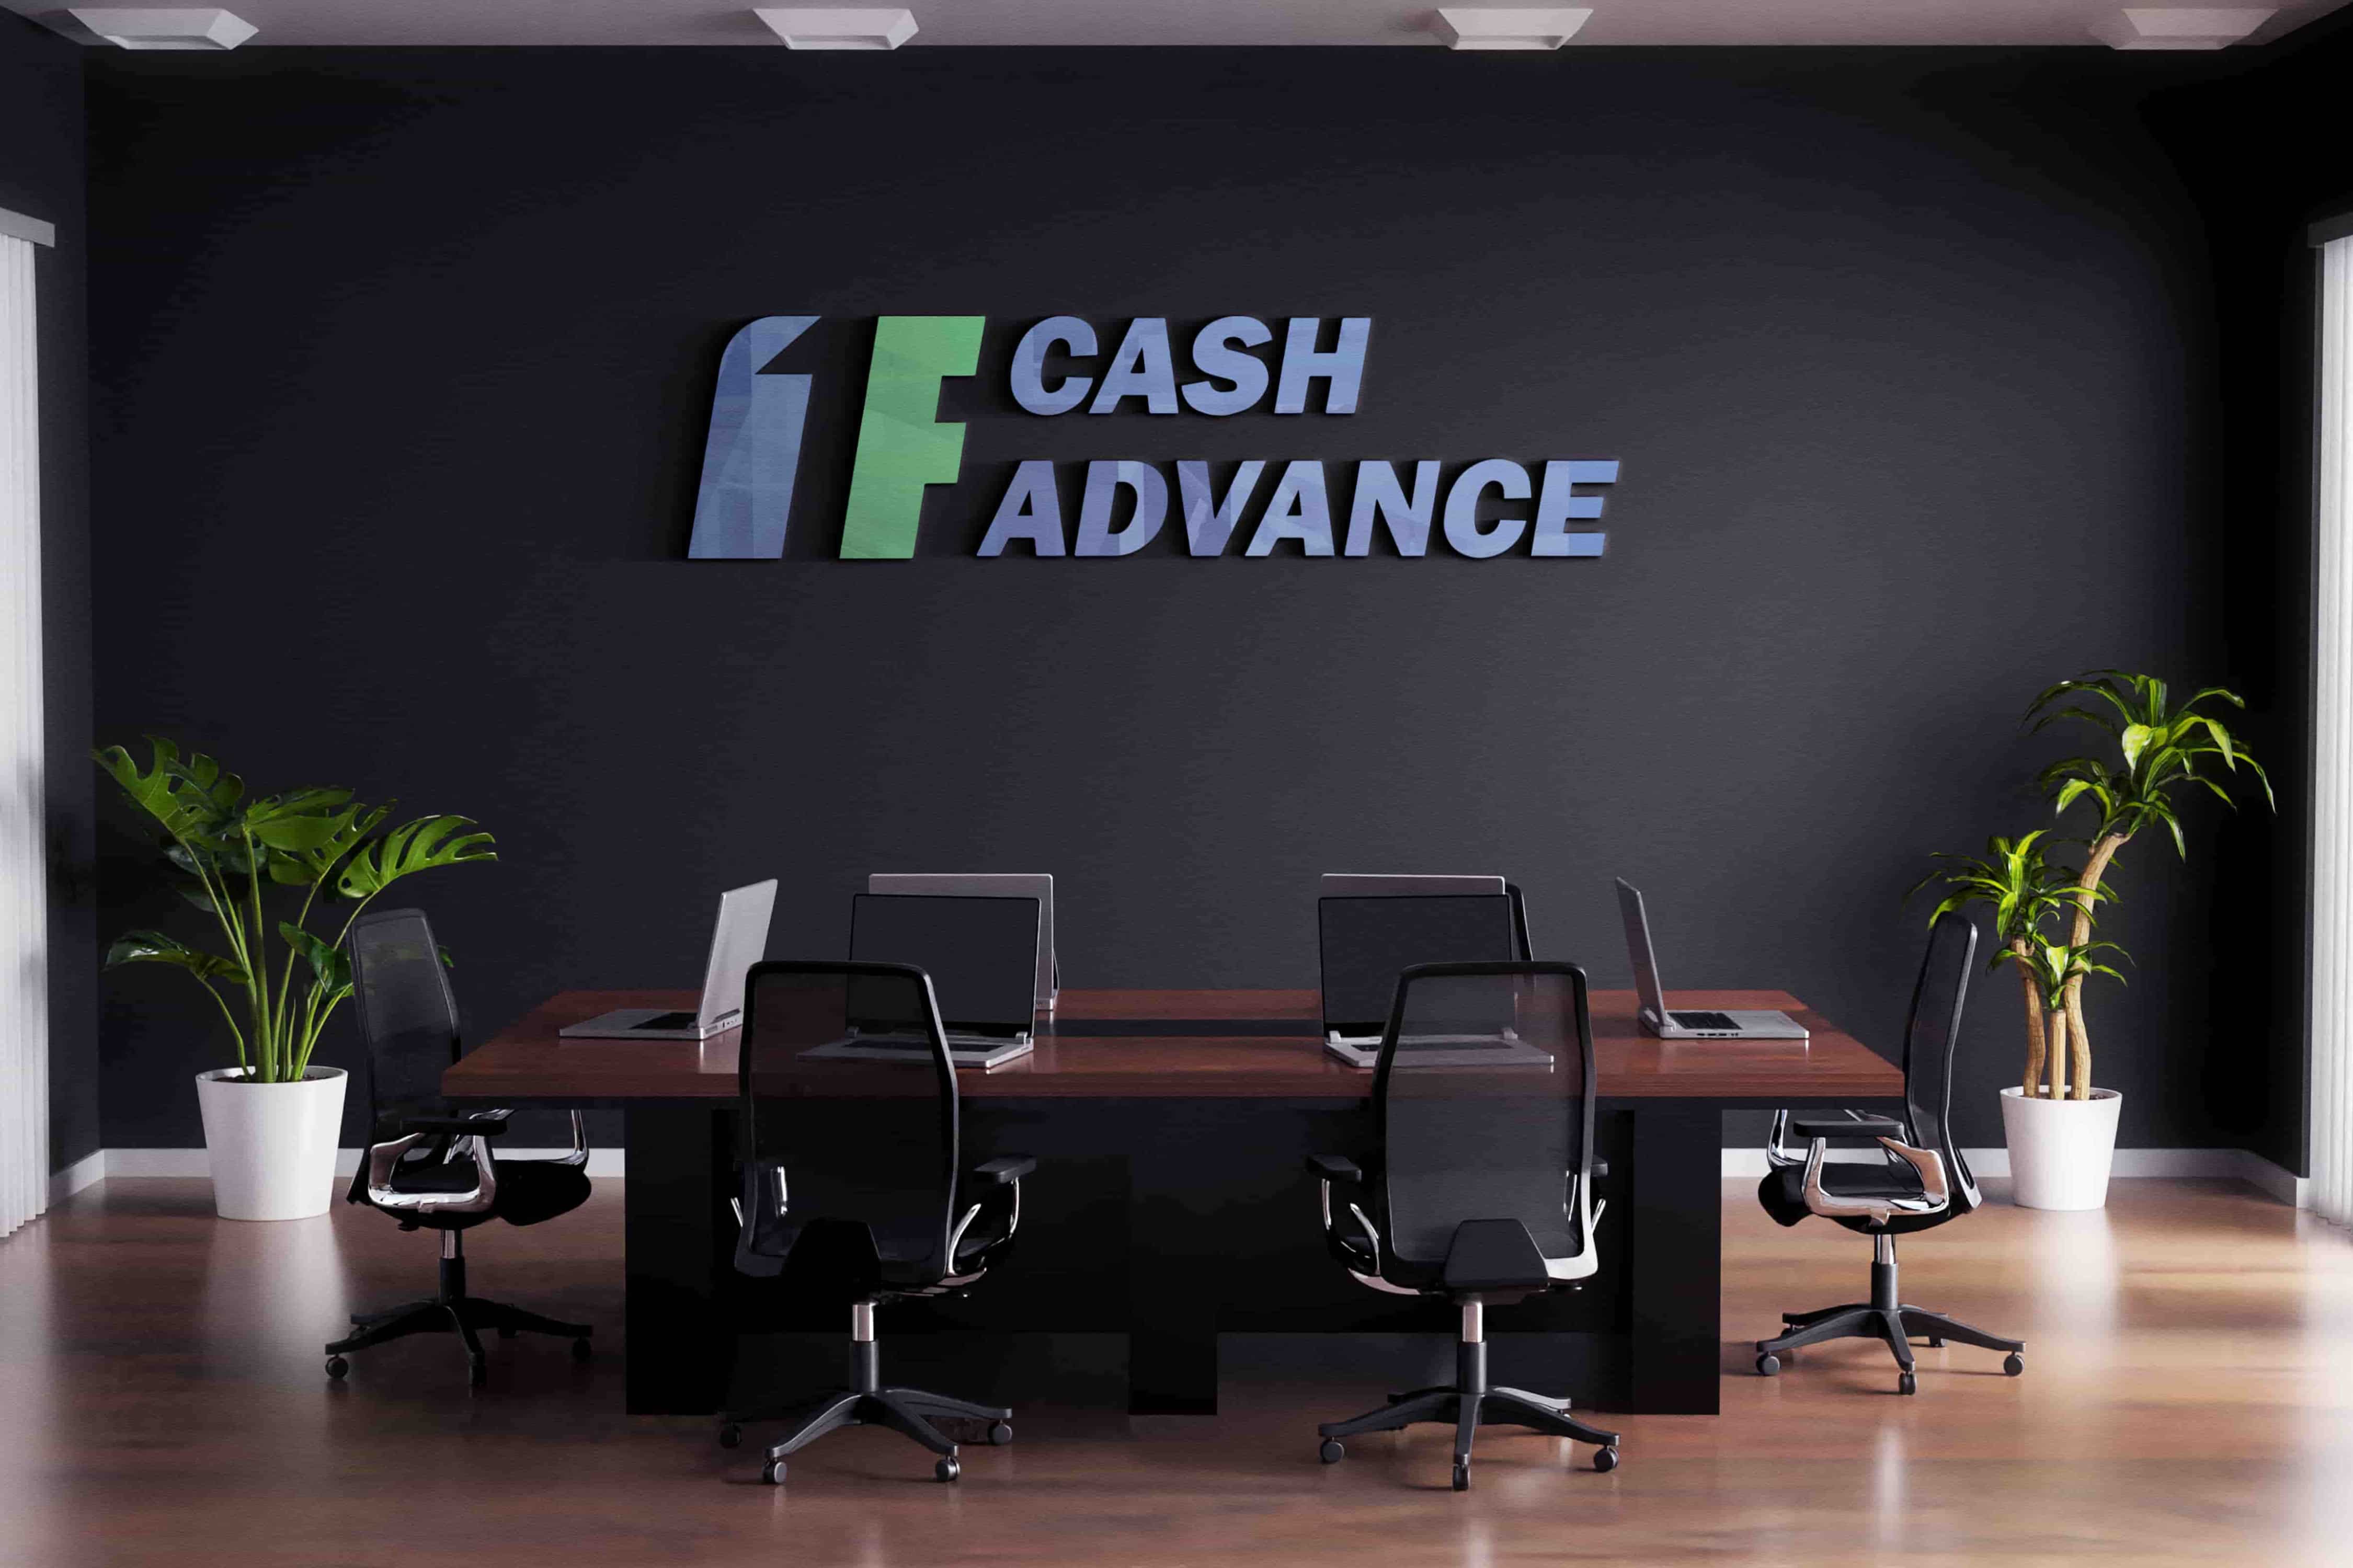 Cash advance loans in Chula Vista, CA